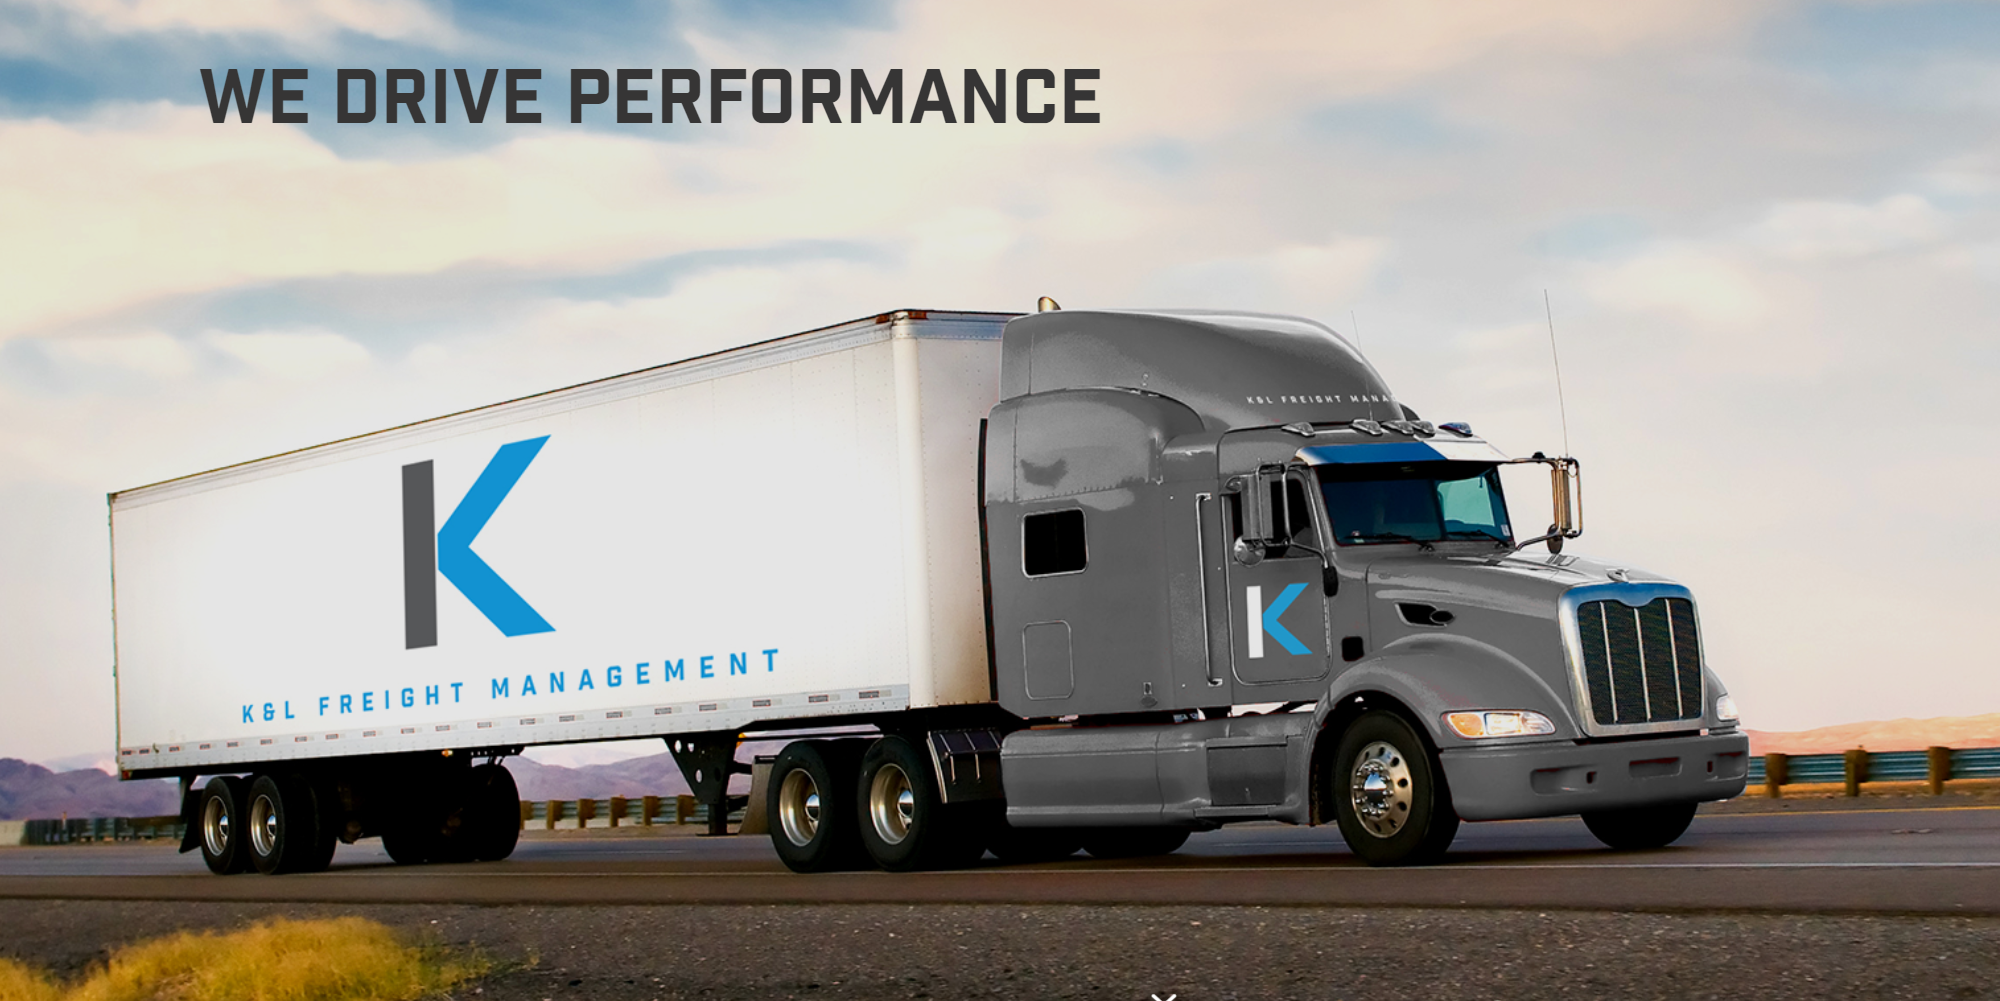 K&L Freight Management